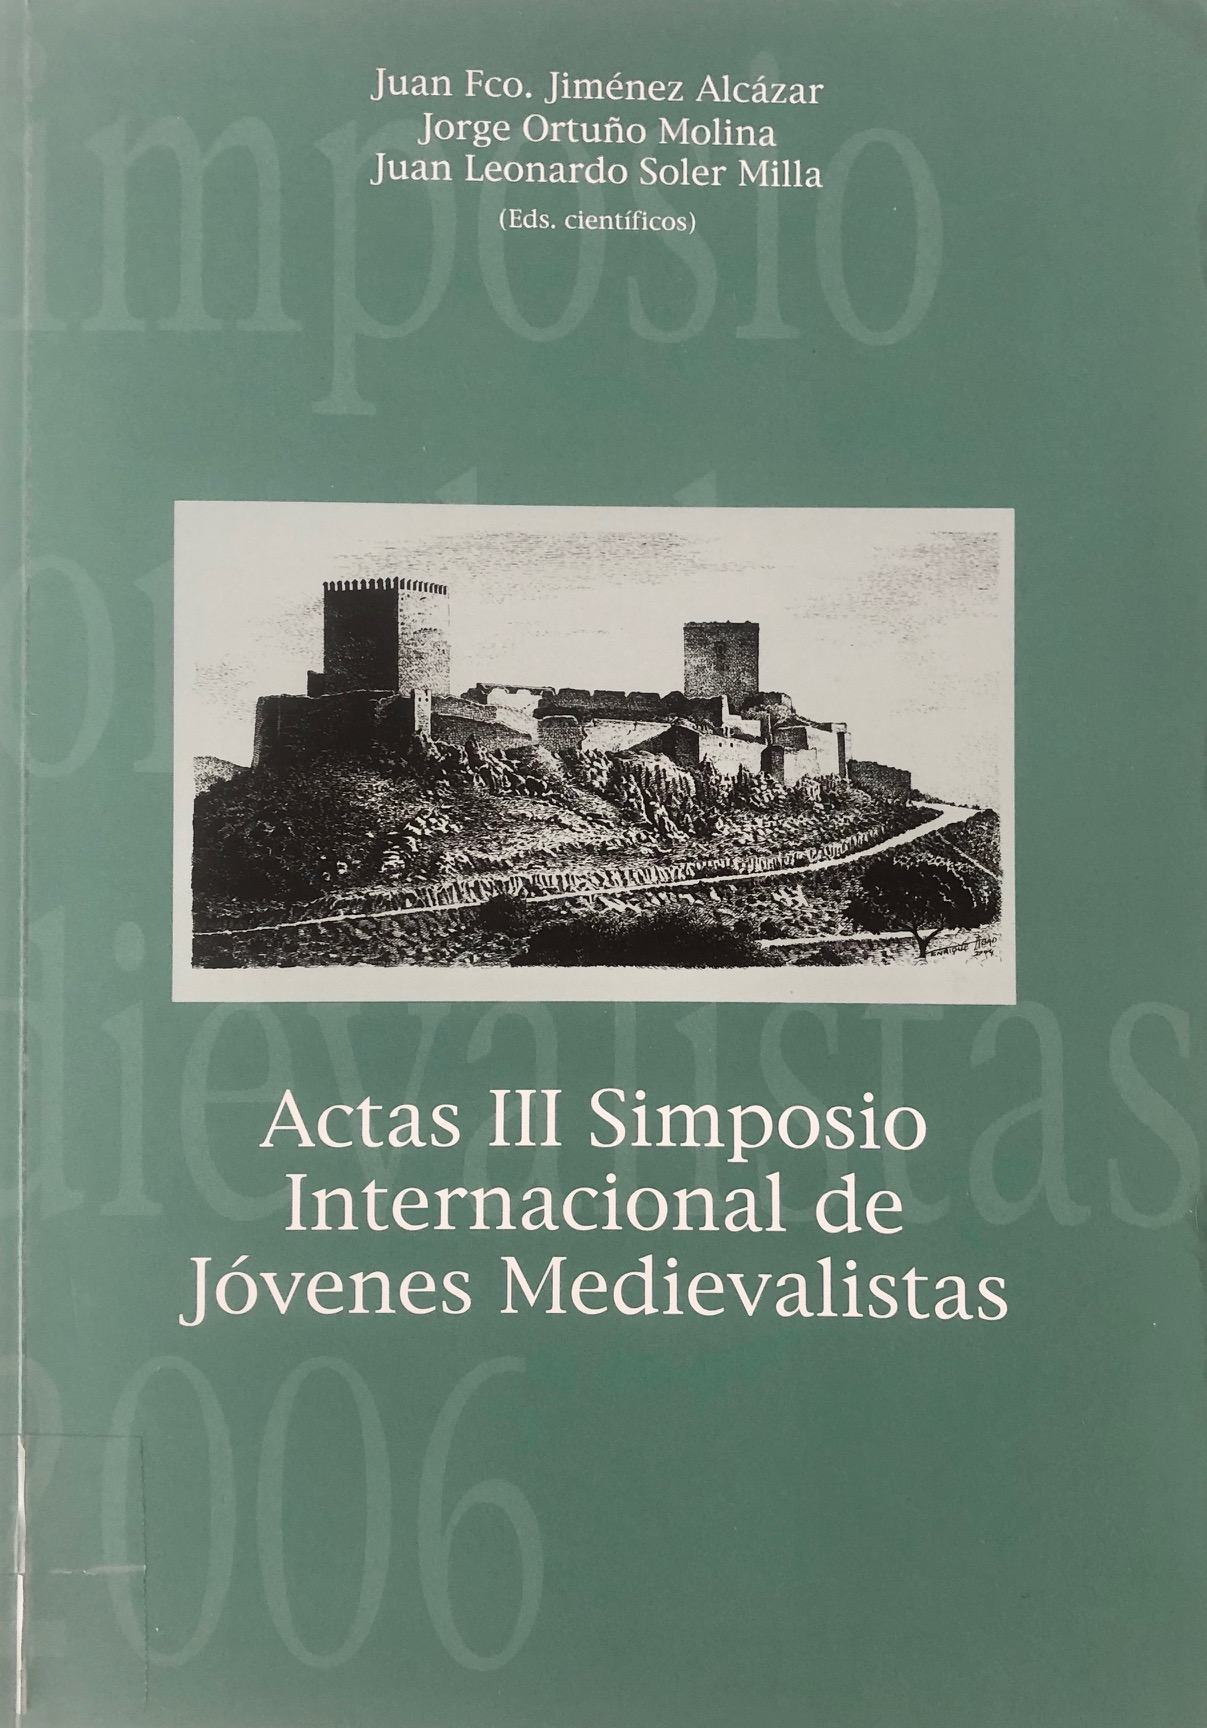 Imagen de portada del libro Actas III Simposio Internacional de Jóvenes Medievalistas